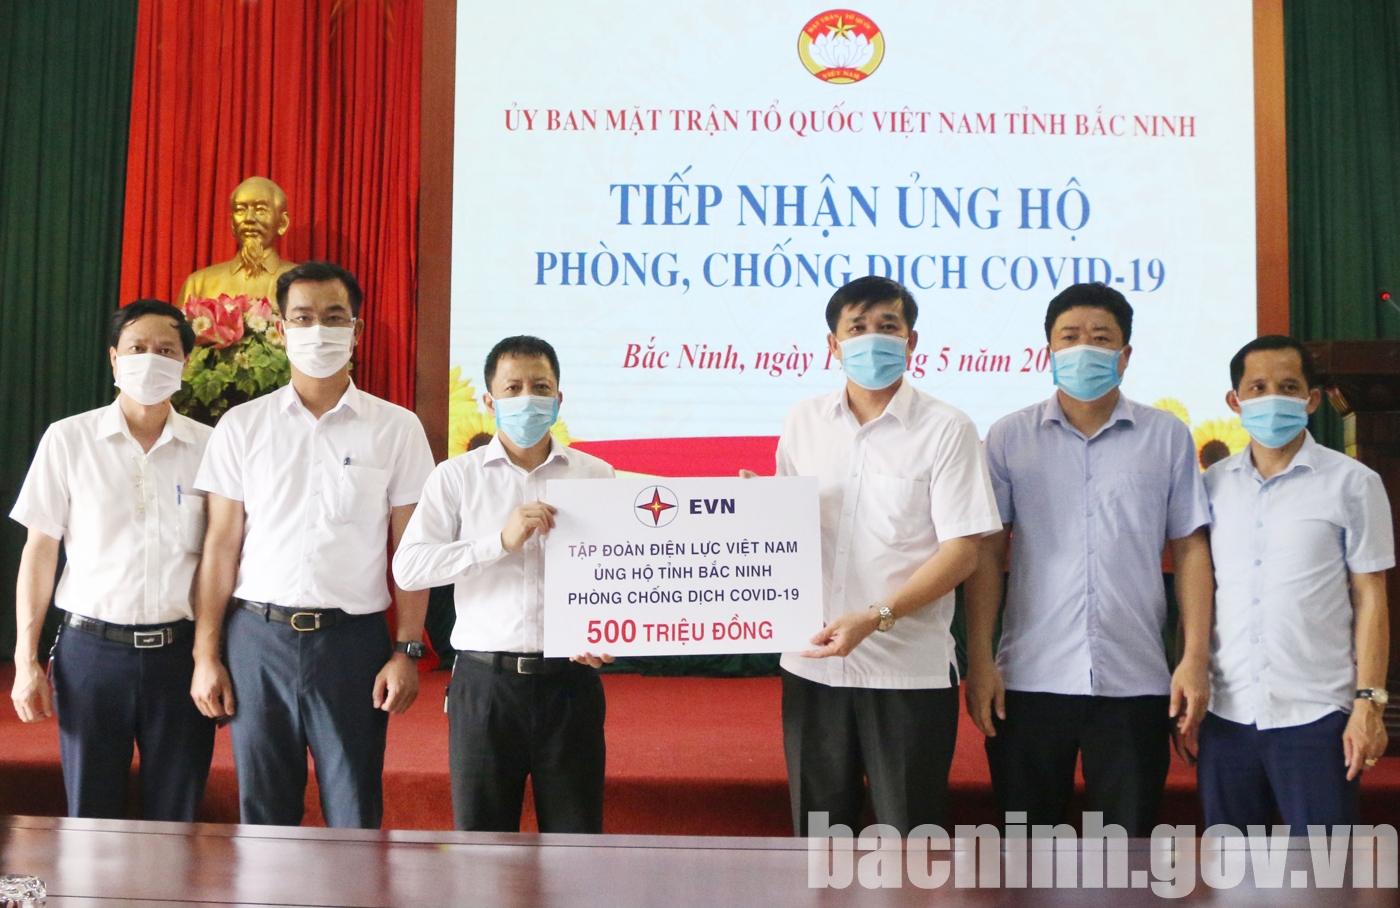 Tập đoàn Điện lực Việt Nam ủng hộ công tác phòng, chống dịch Covid-19